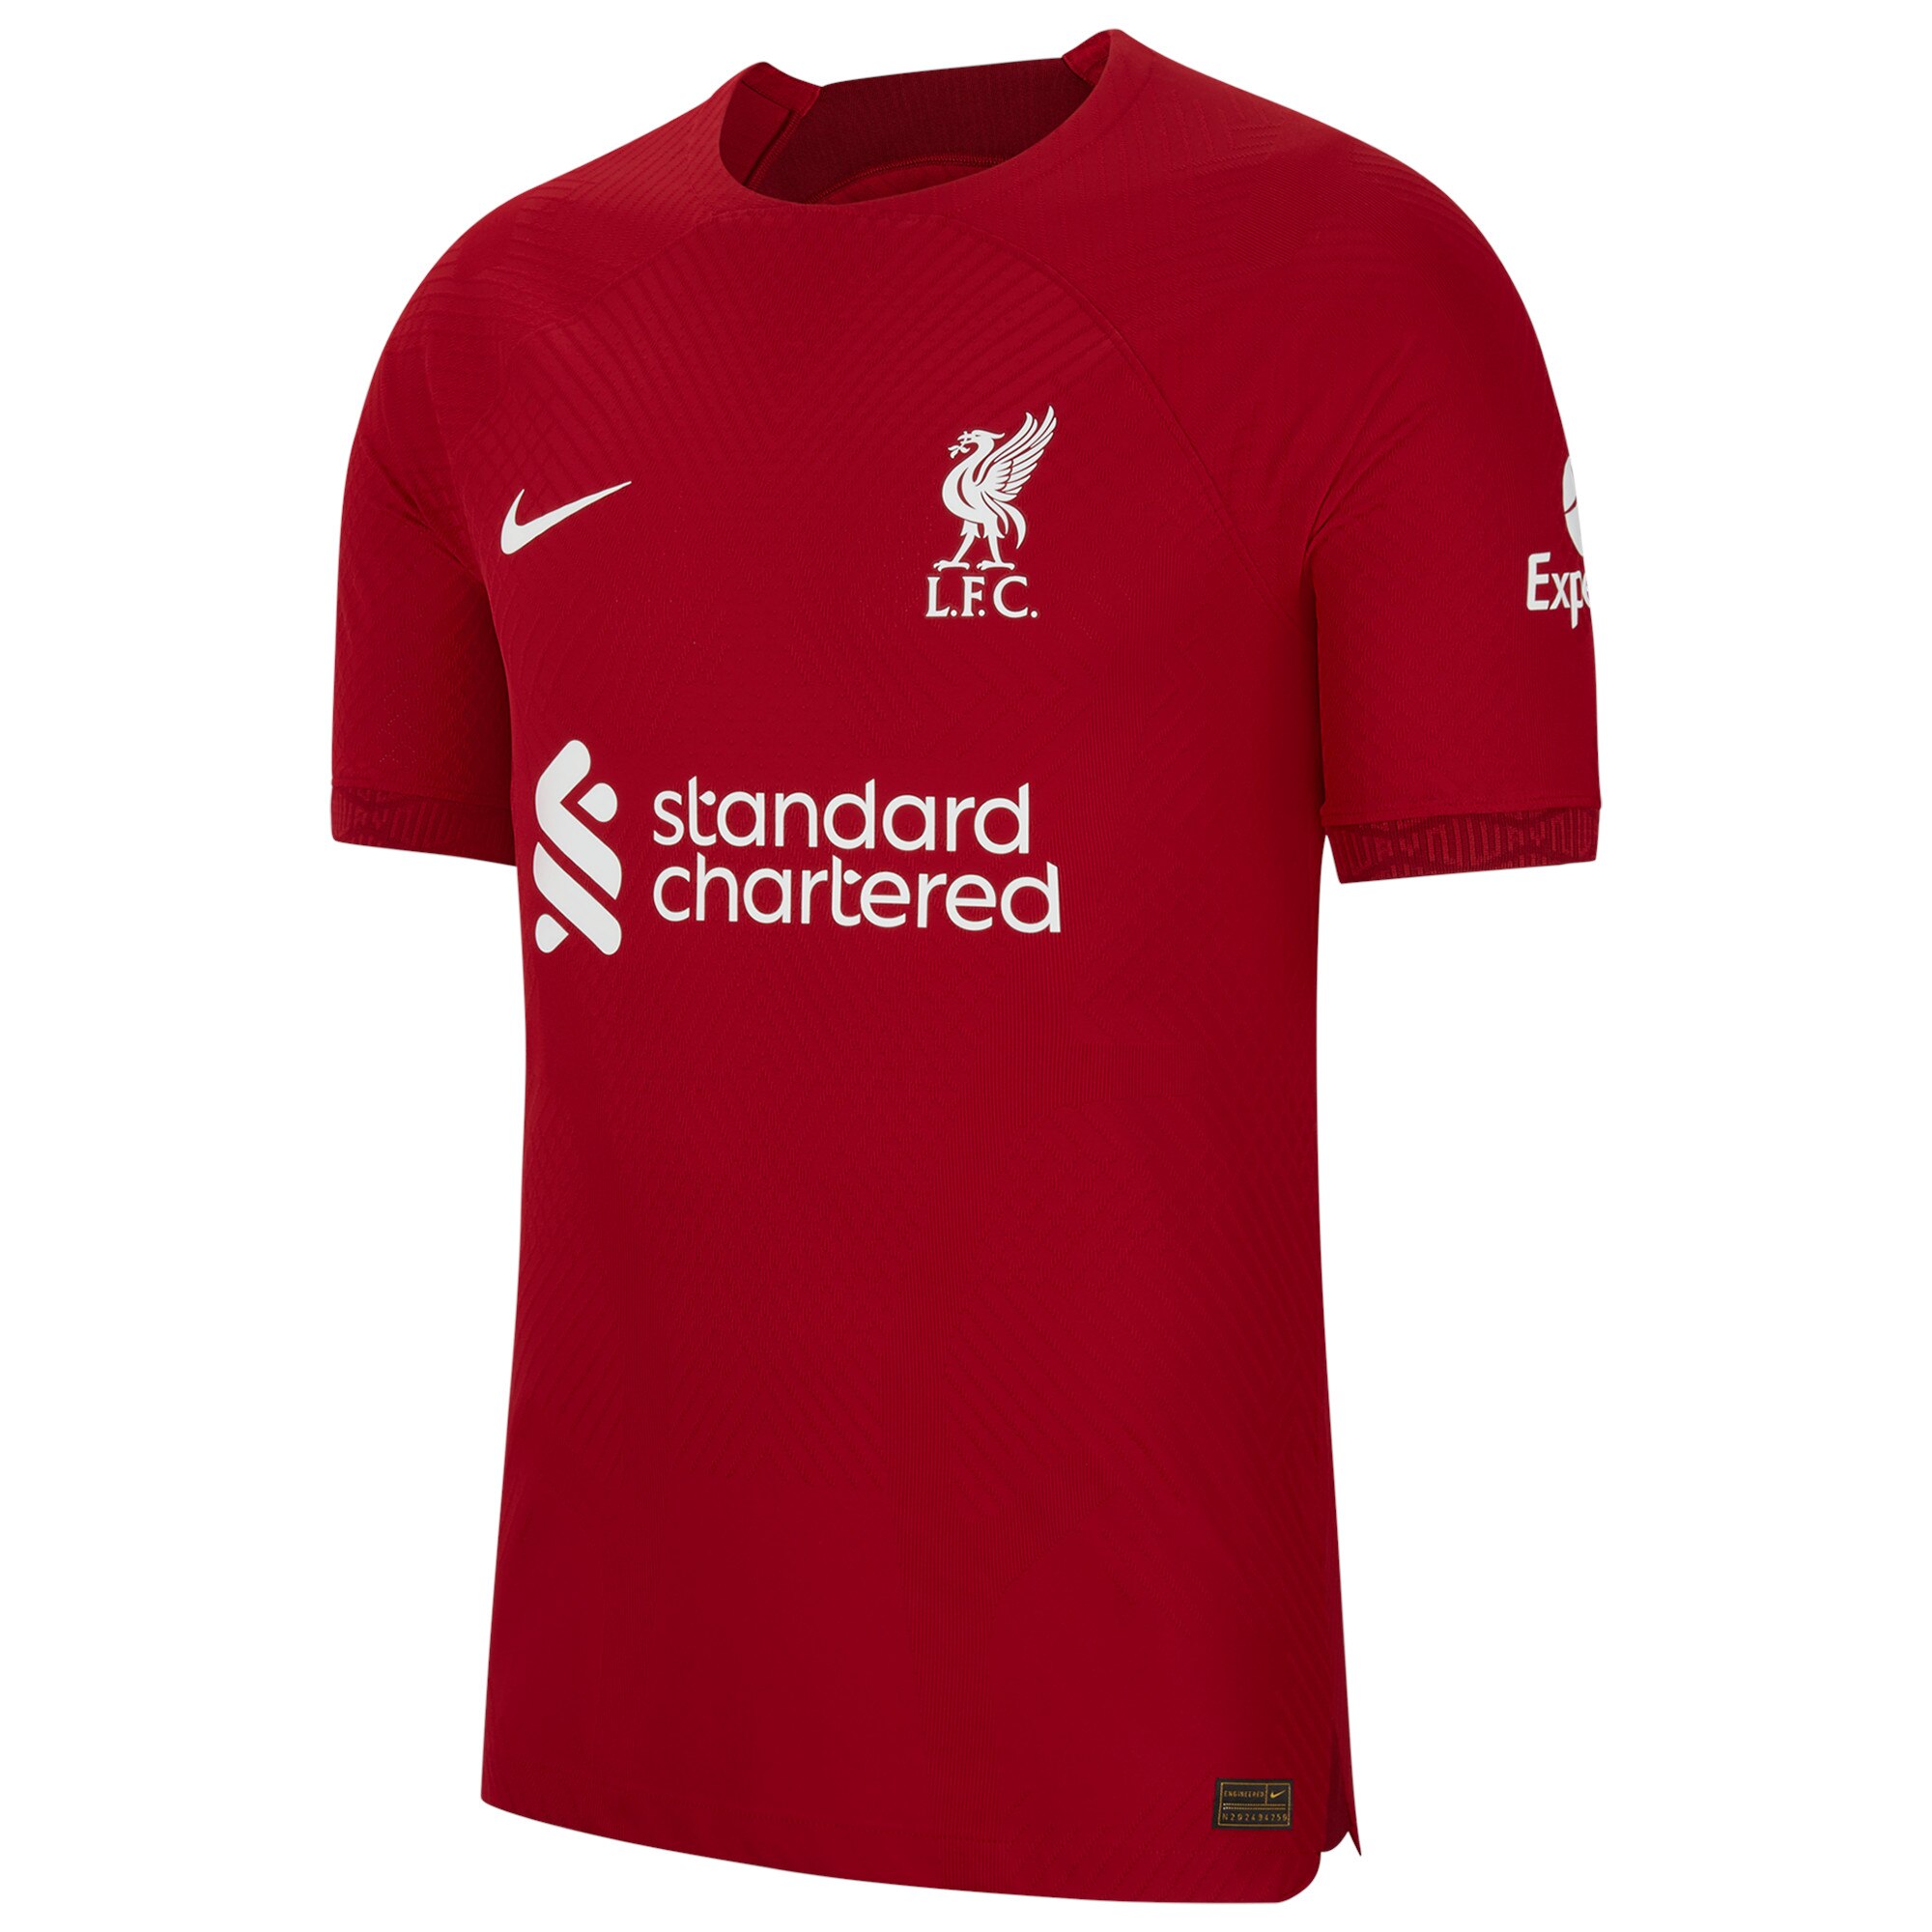 Liverpool Home Vapor Match Shirt 2022/23 with M.Salah 11 printing